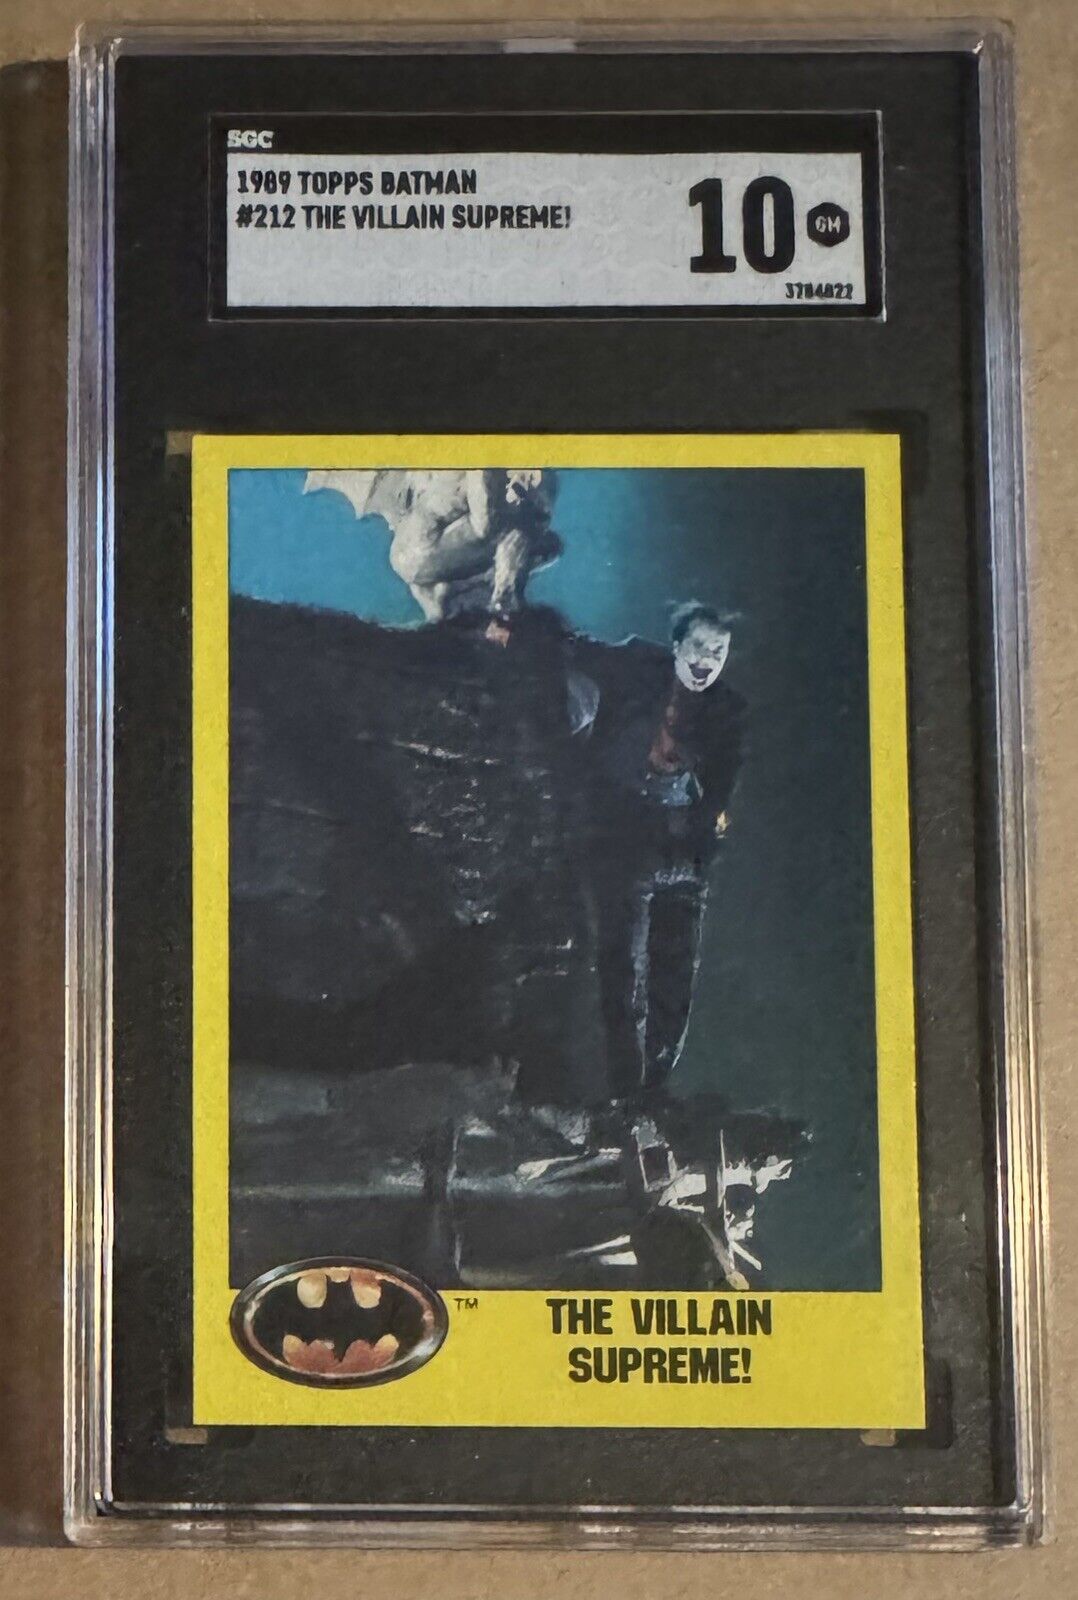 1989 Topps Batman #212 The Villain Supreme SGC 10 Joker Jack Nicholson